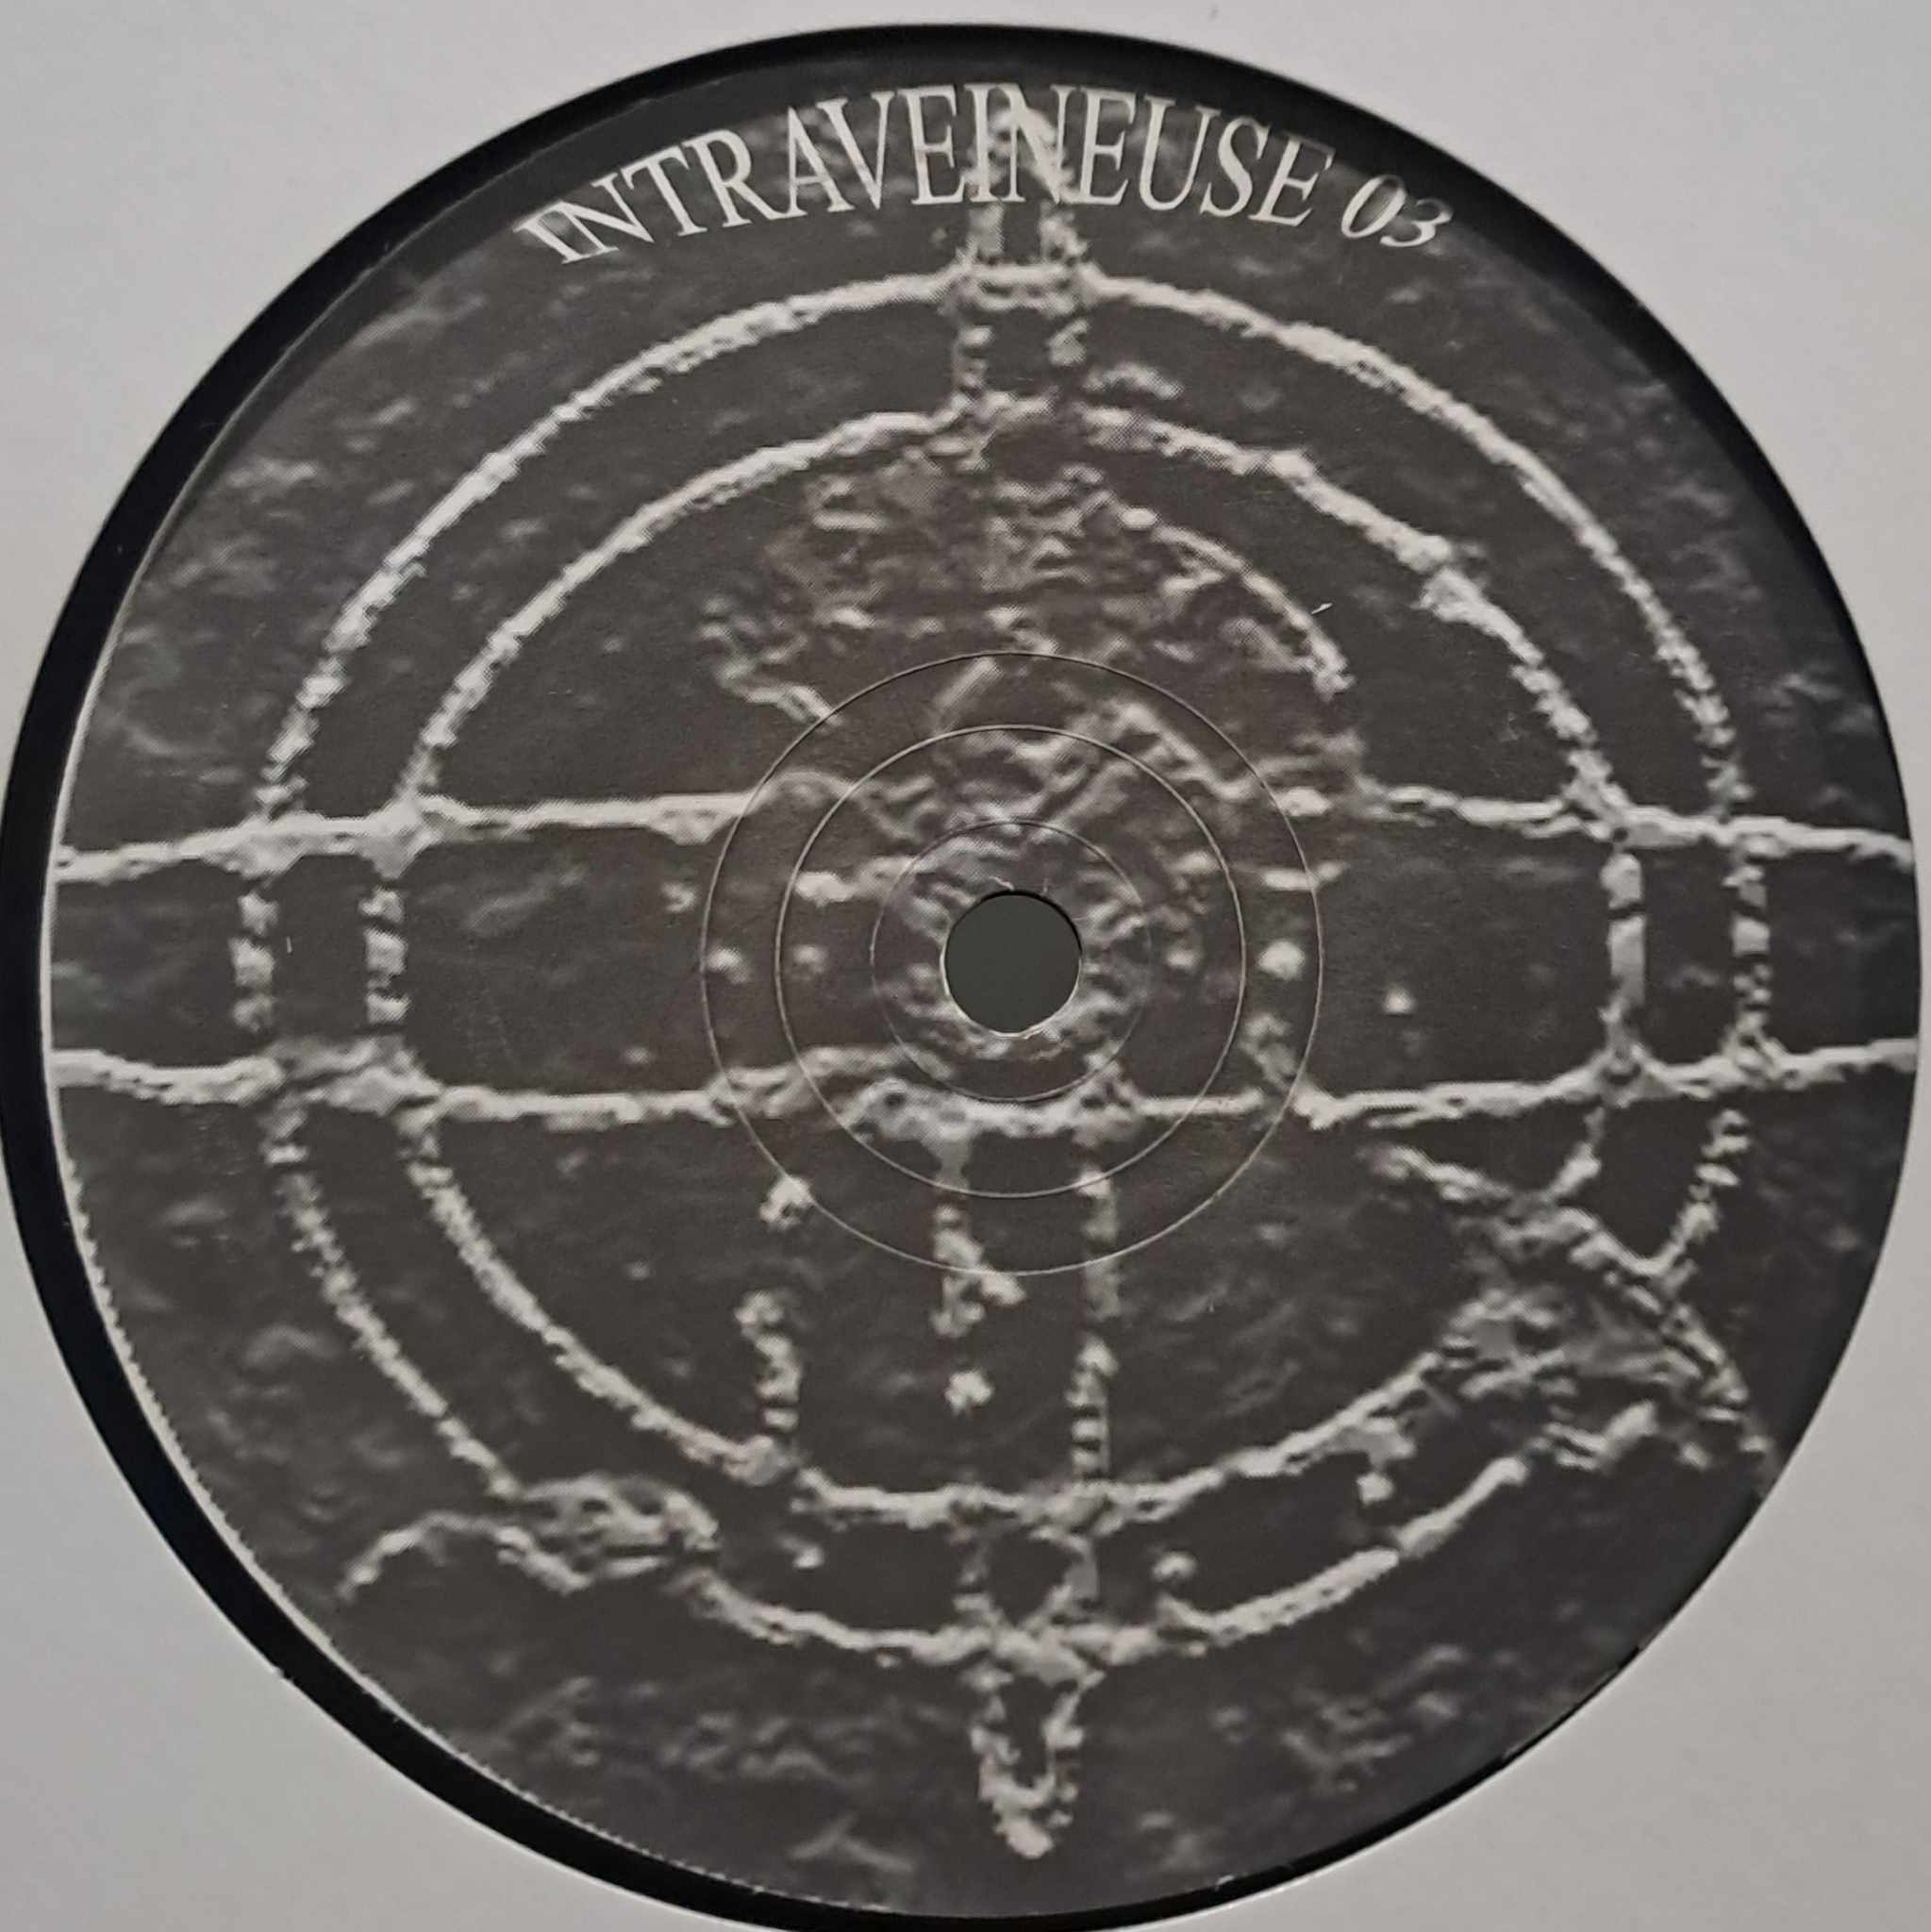 Intraveineuse 03 - vinyle hardcore